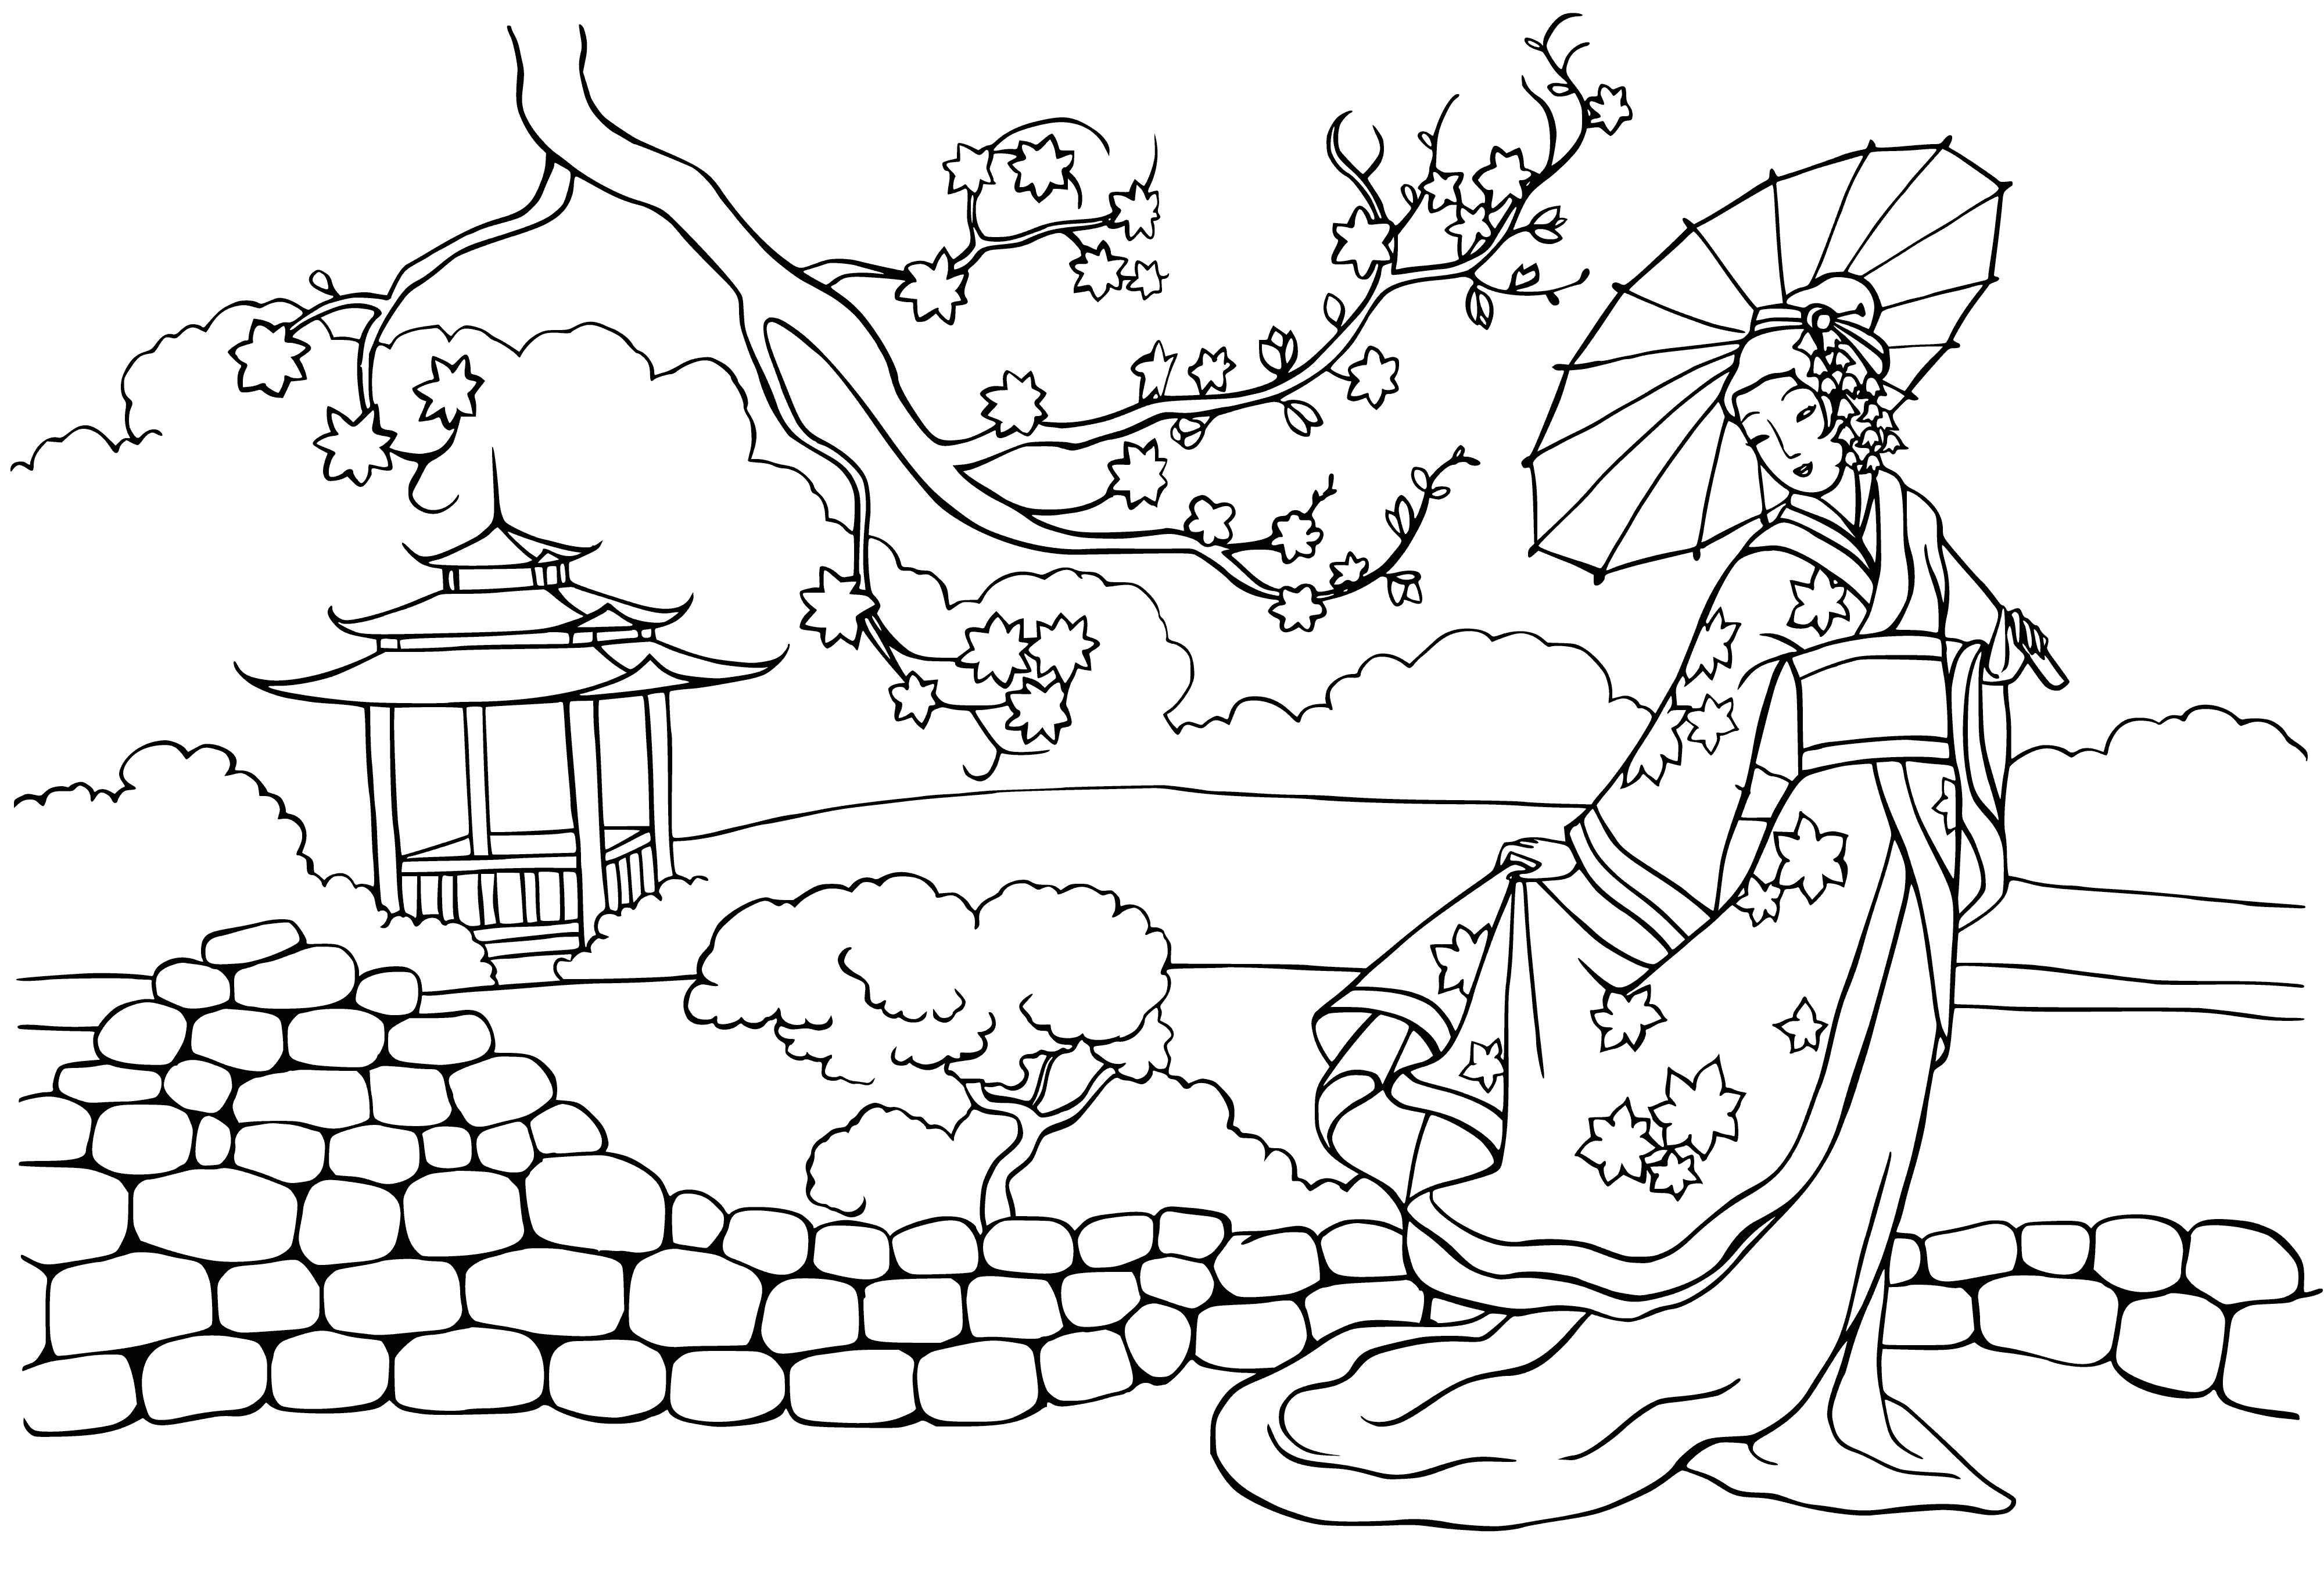 Princess of China coloring page